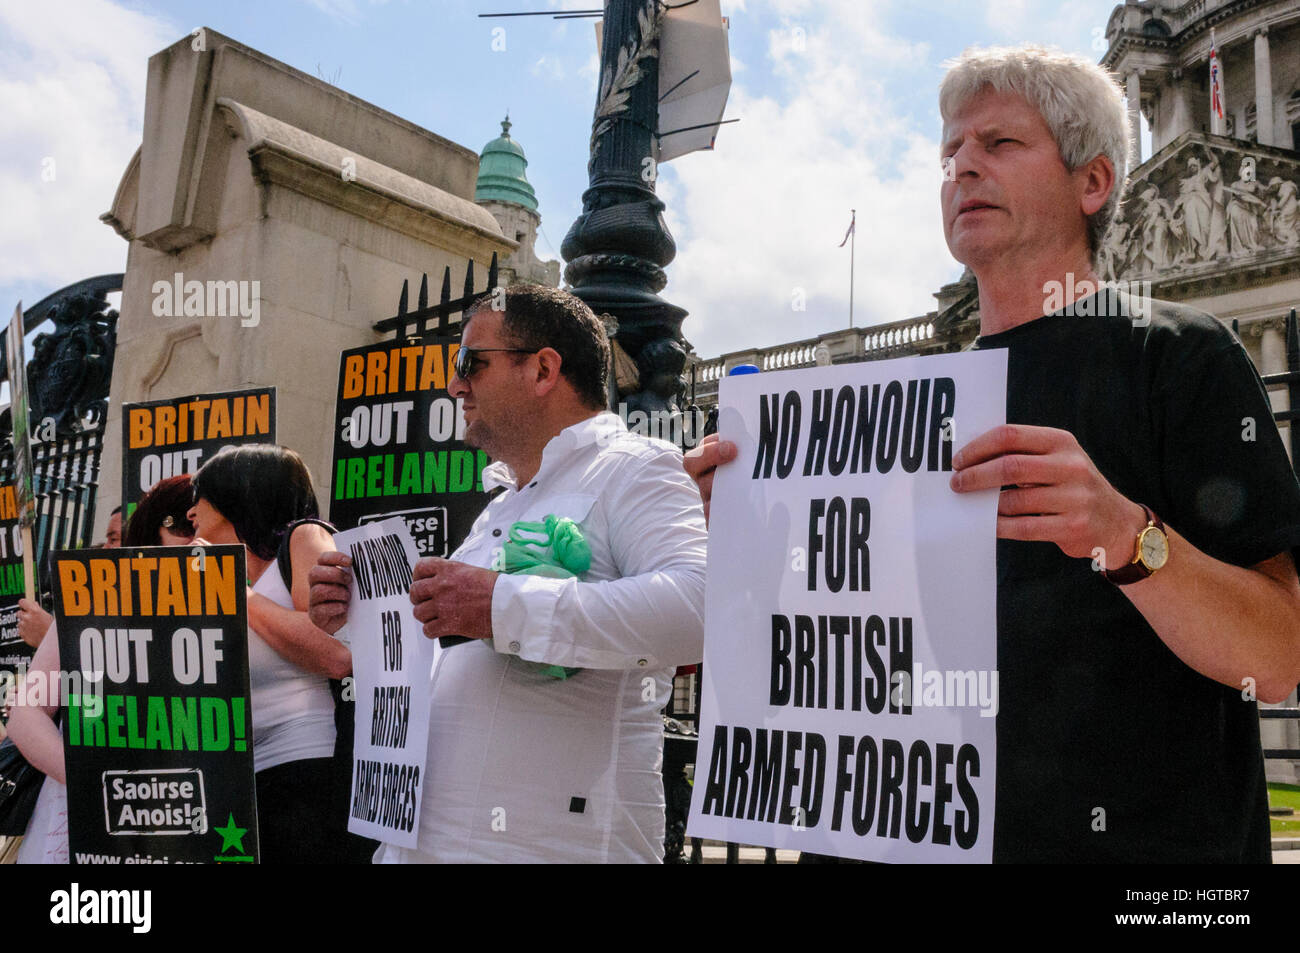 26 giugno 2010, Belfast. Gli uomini tenere indicazioni dicendo "No onore per forze armate britanniche.' Eirigi, una protesta repubblicana gruppo, dimostra contro il dominio britannico in Irlanda del Nord Foto Stock